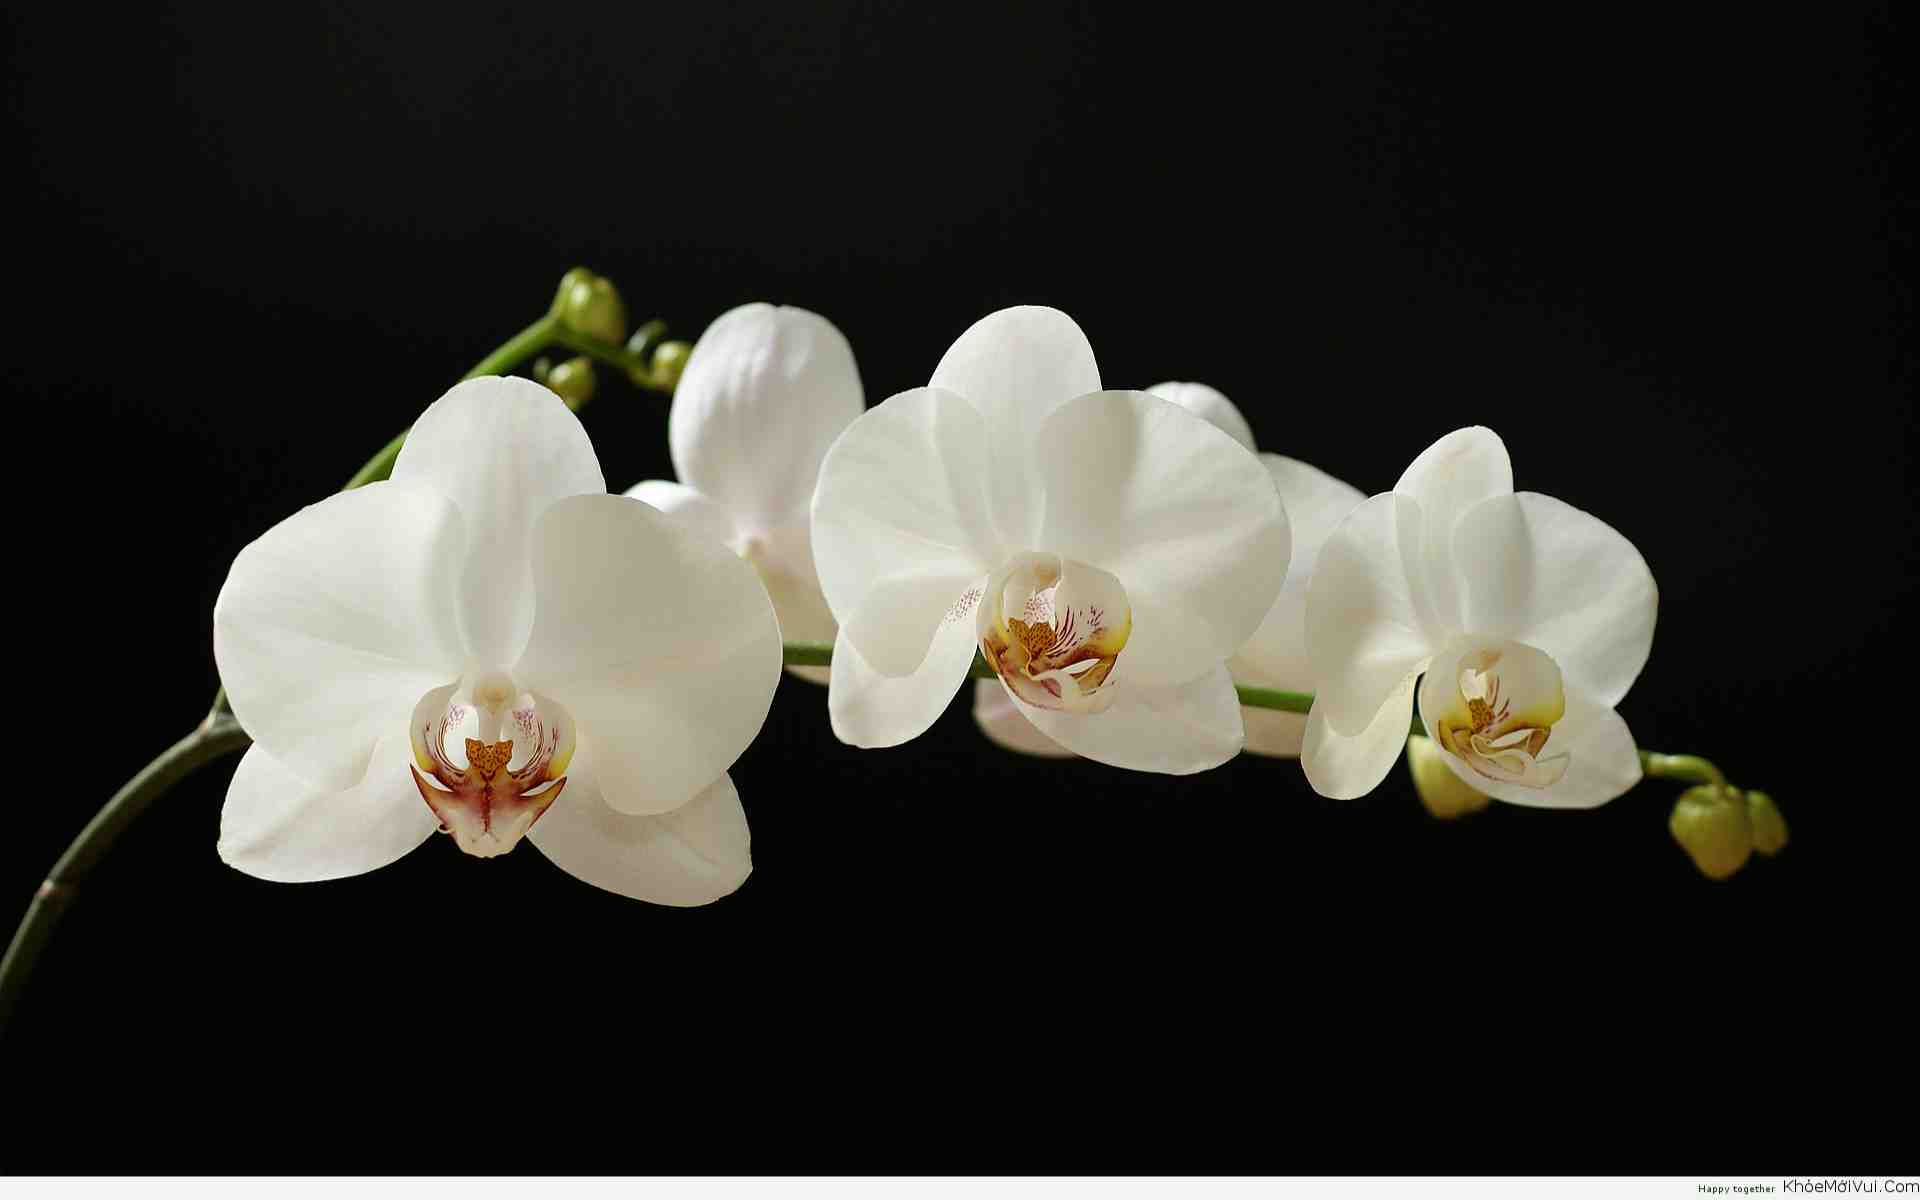 Hoa phong lan: Một trong những loại hoa đẹp và quý giá của Việt Nam là hoa phong lan. Với những đóa hoa to lớn, rực rỡ màu sắc, chúng mang đến vẻ đẹp sang trọng và quý phái cho mọi không gian. Hãy xem hình ảnh liên quan để ngắm nhìn sự tráng lệ của hoa phong lan nhé!